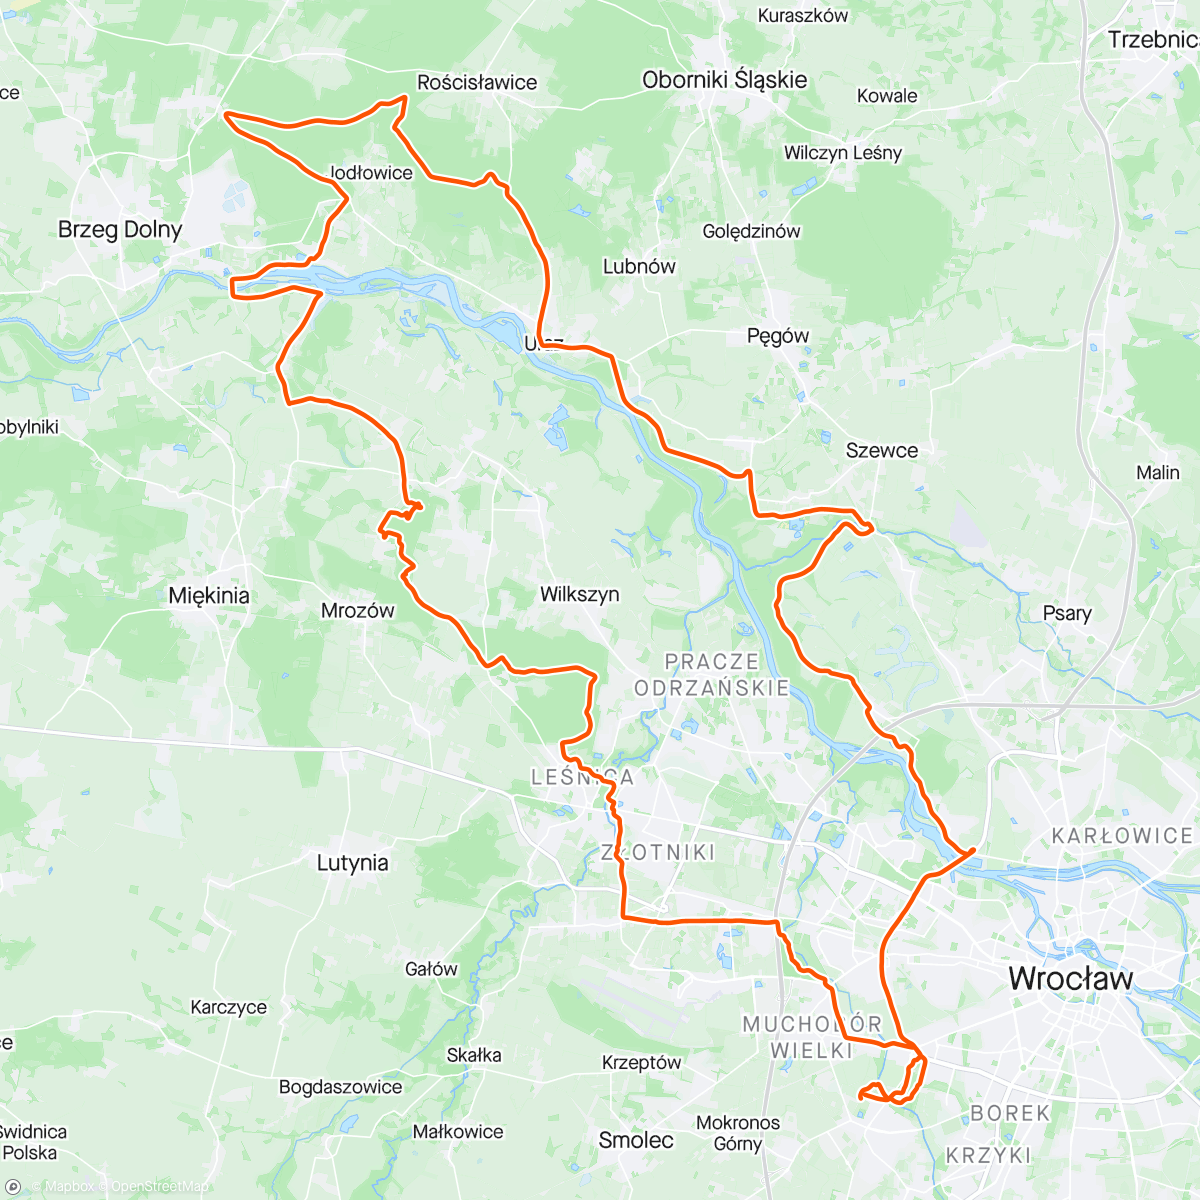 活动地图，Morning Mountain Bike Ride